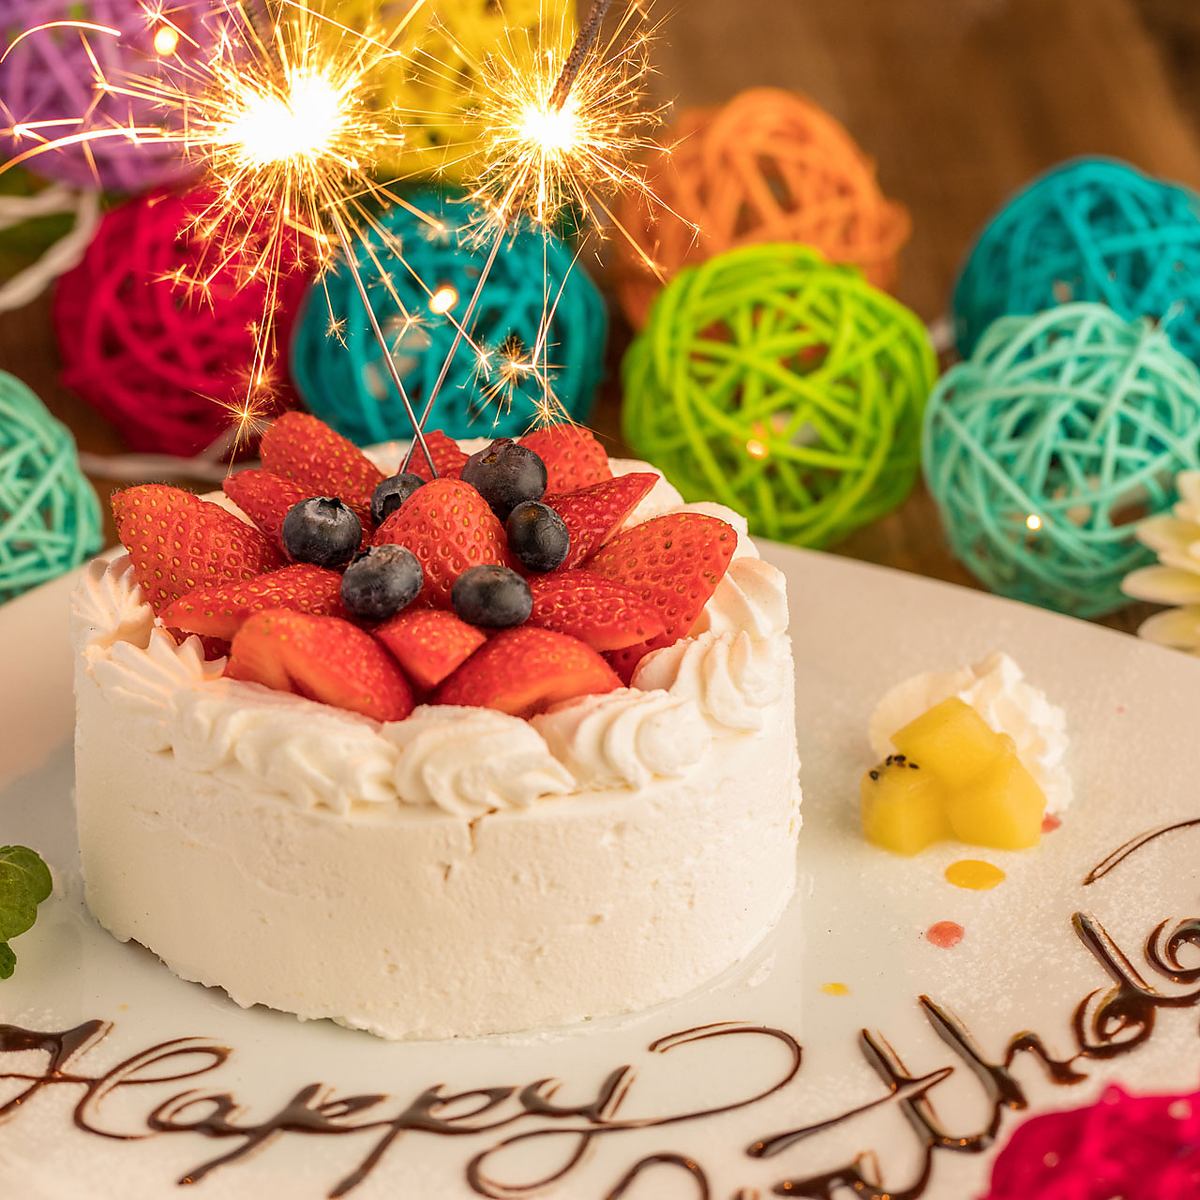 在生日或週年紀念日用您名字的特殊甜點盤慶祝♪